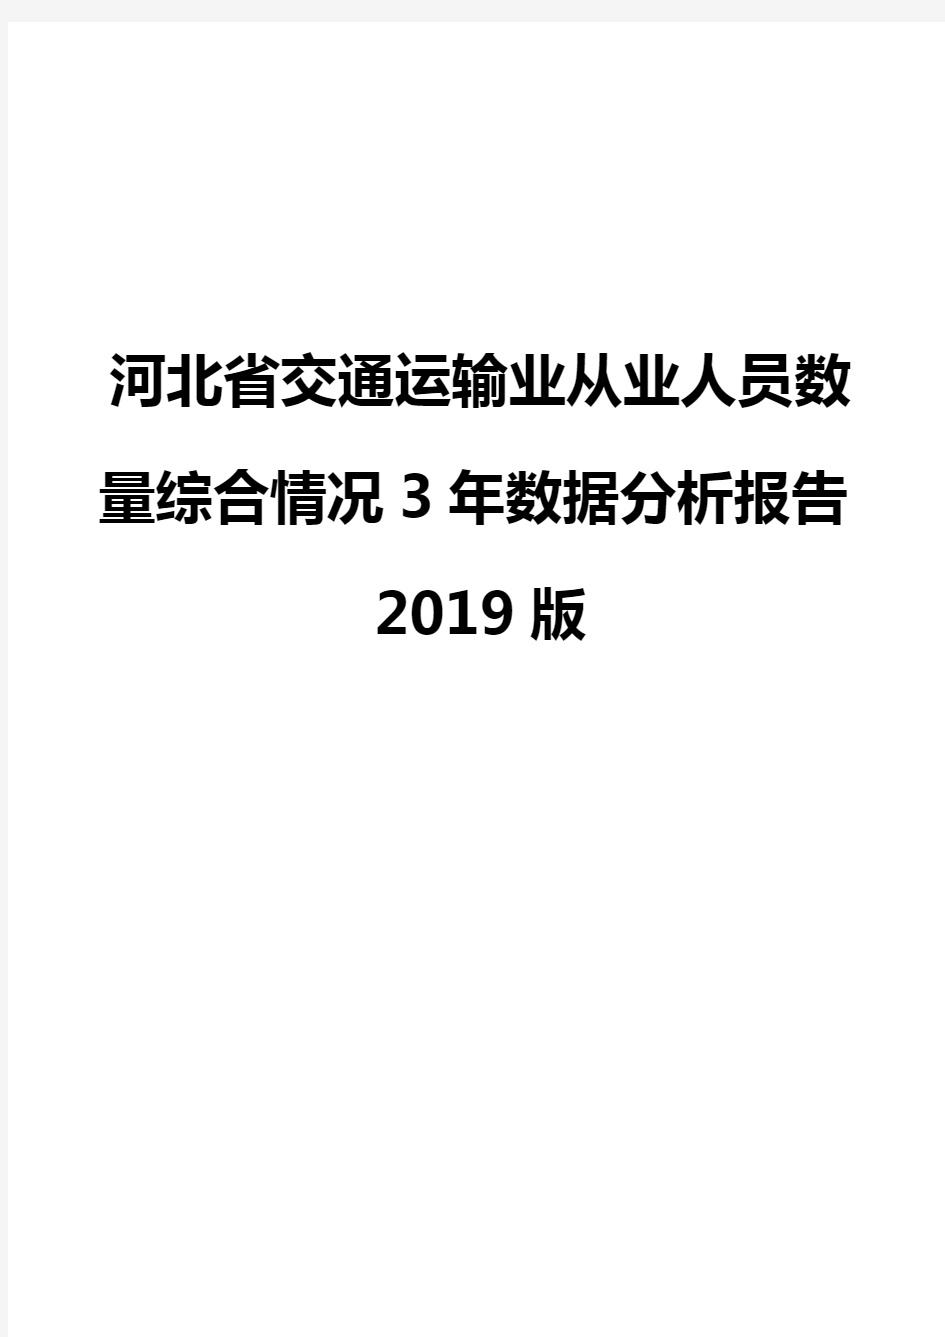 河北省交通运输业从业人员数量综合情况3年数据分析报告2019版